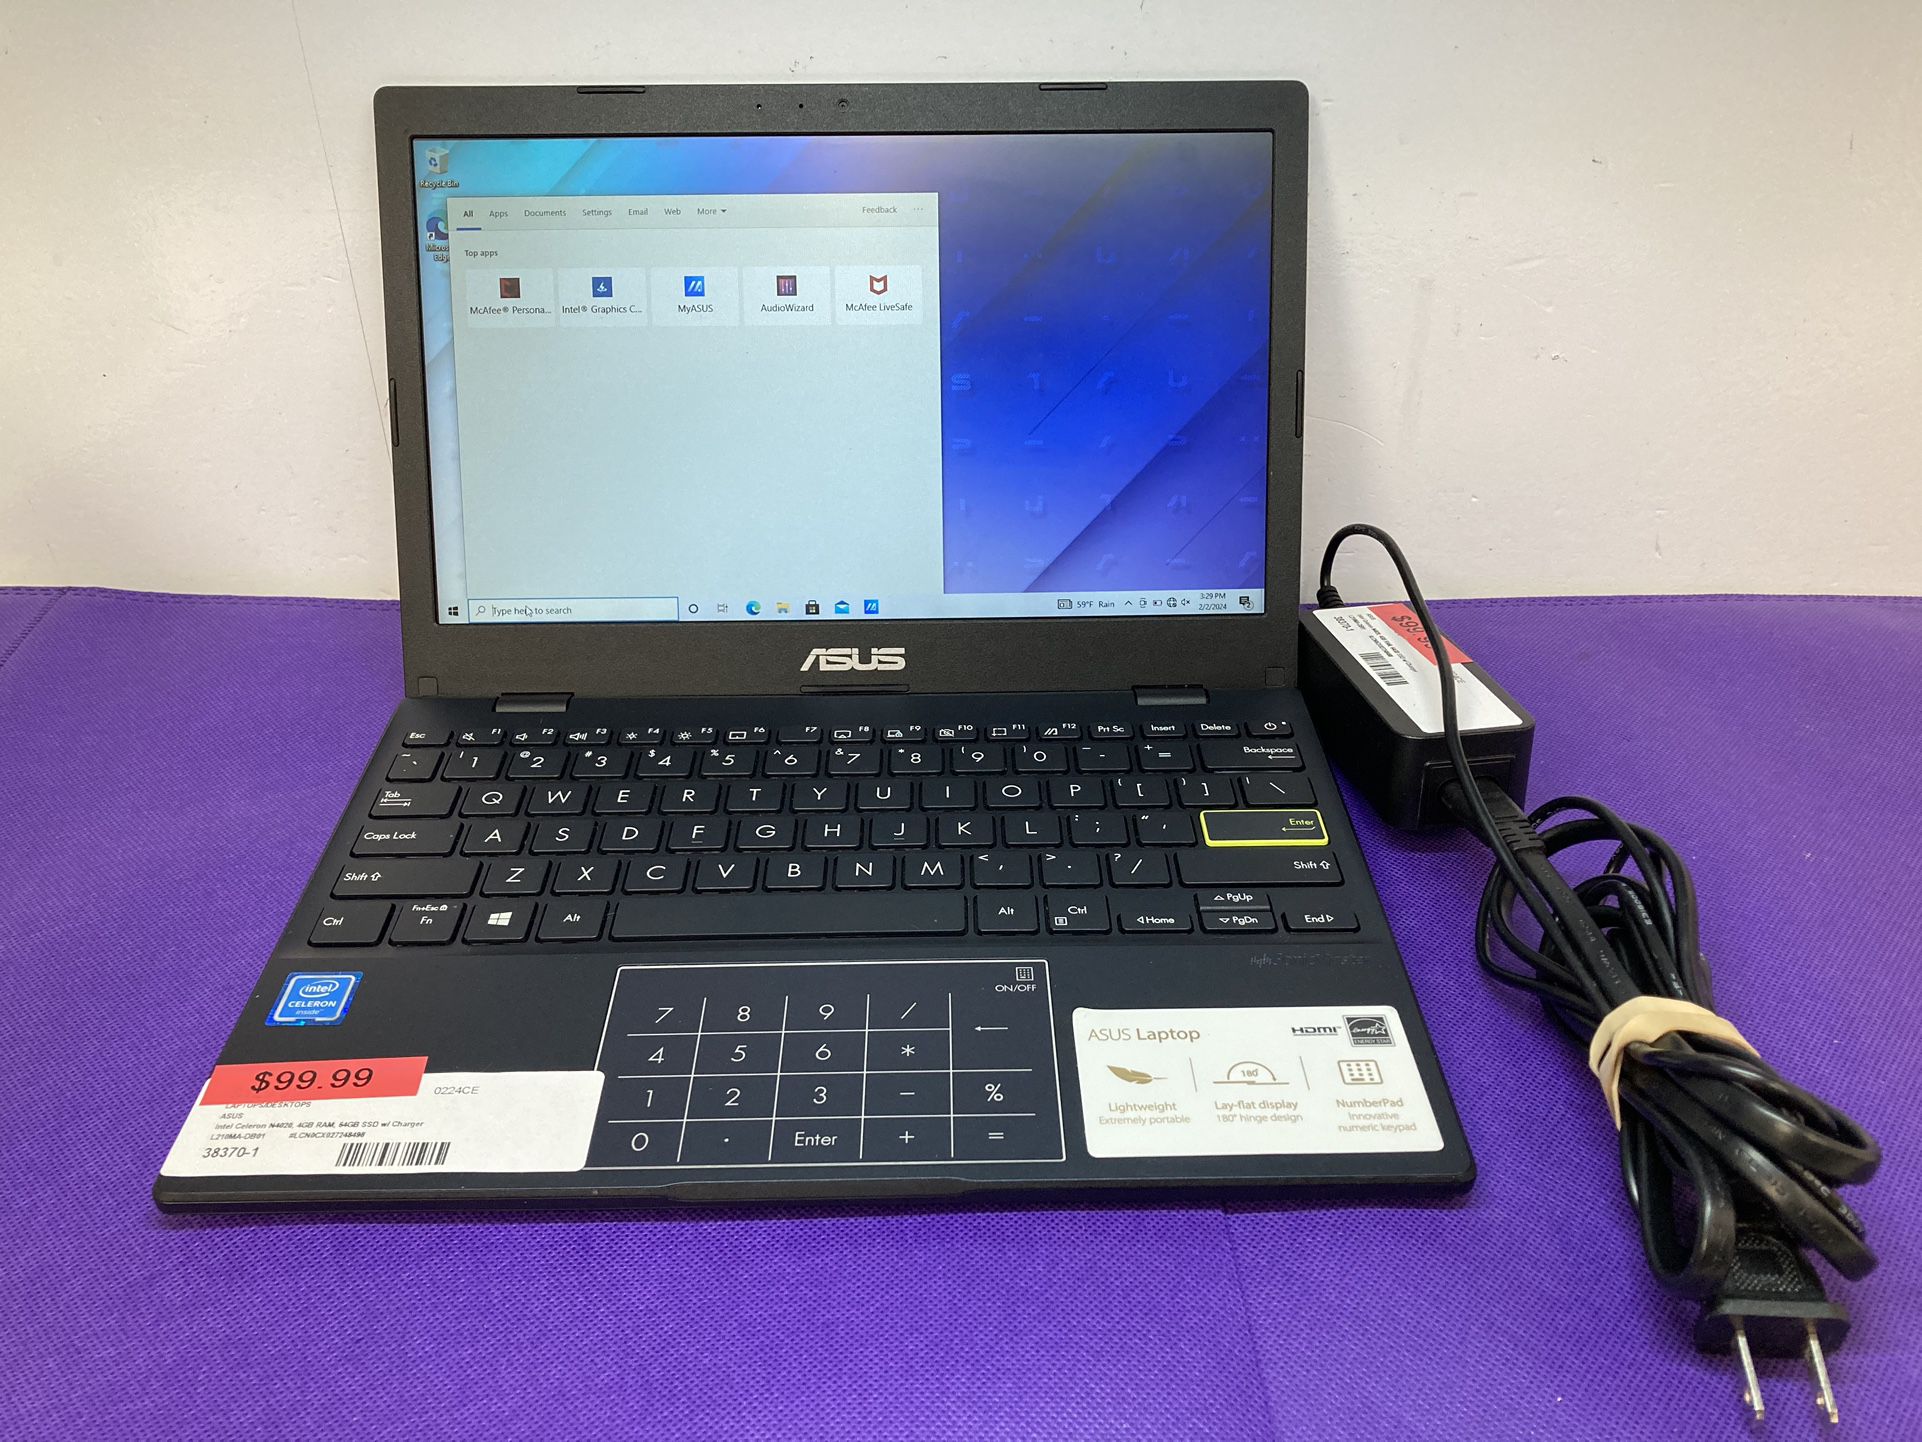 ASUS Laptop L210 MA Intel Celeron N4020 Processor, 4GB RAM, 64GB SSD   